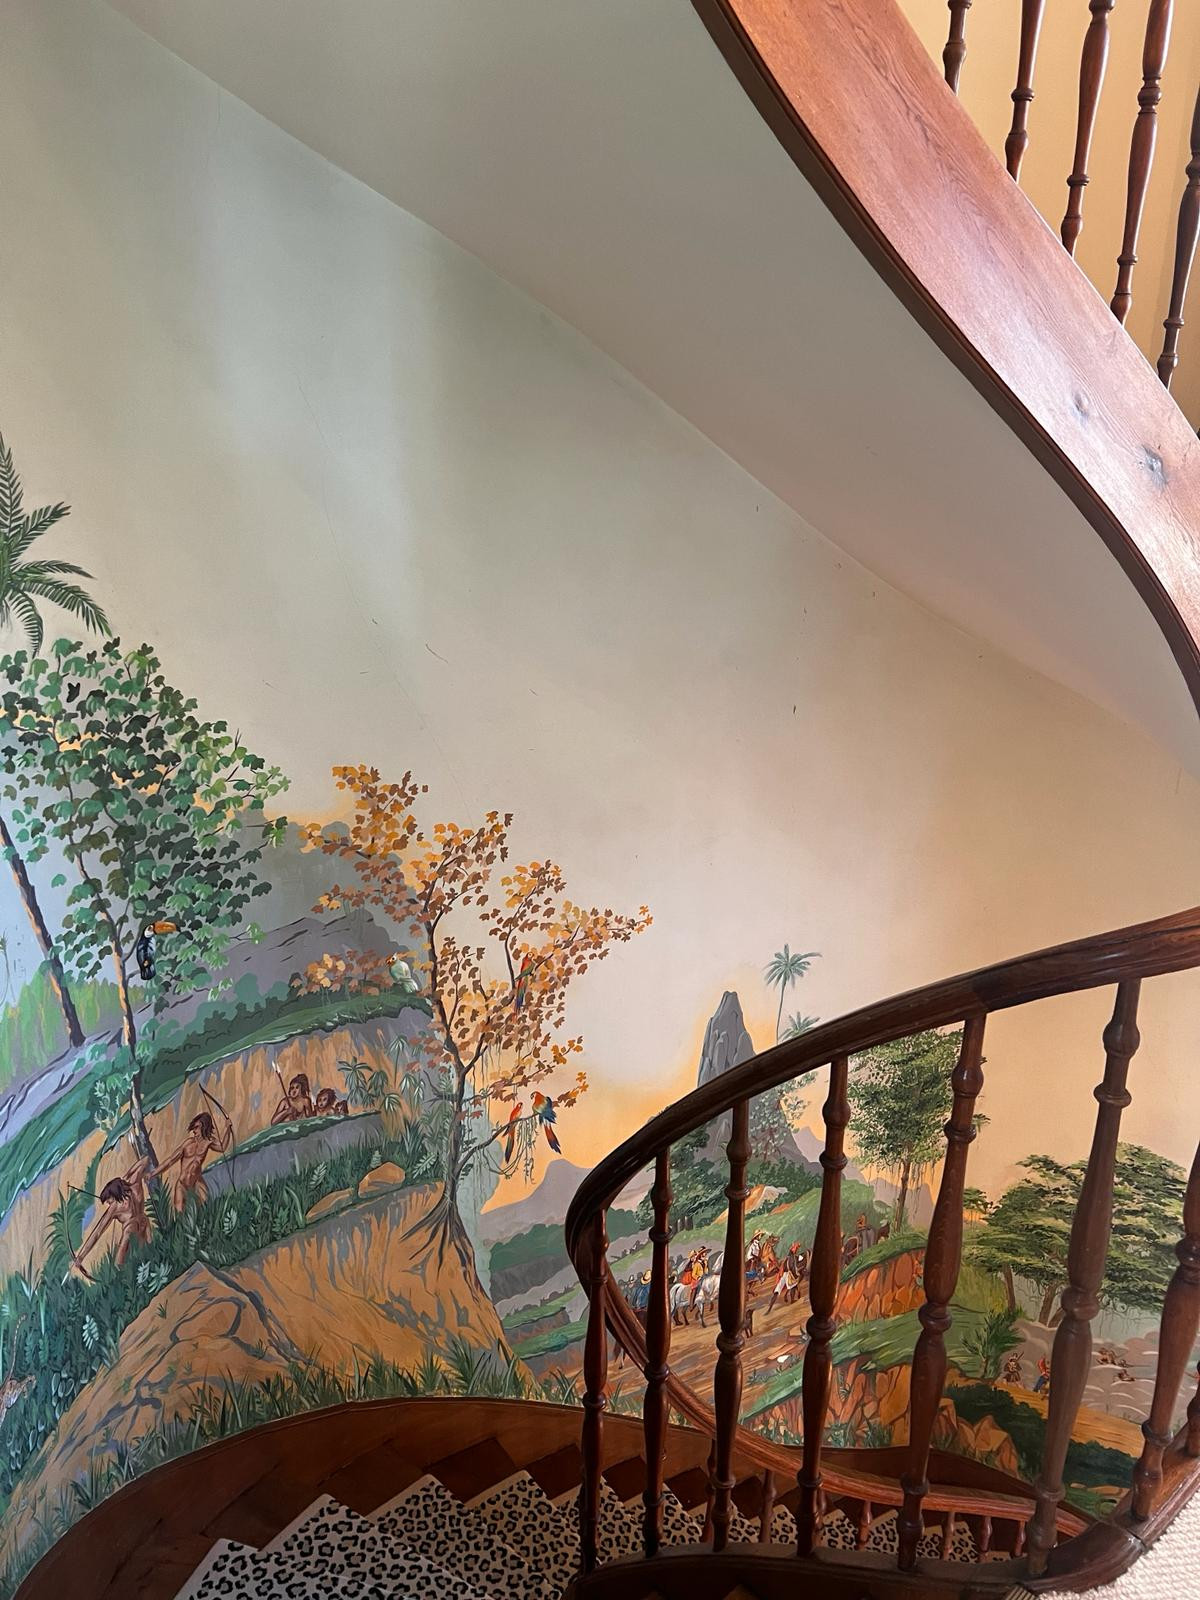 villa escalier décoré